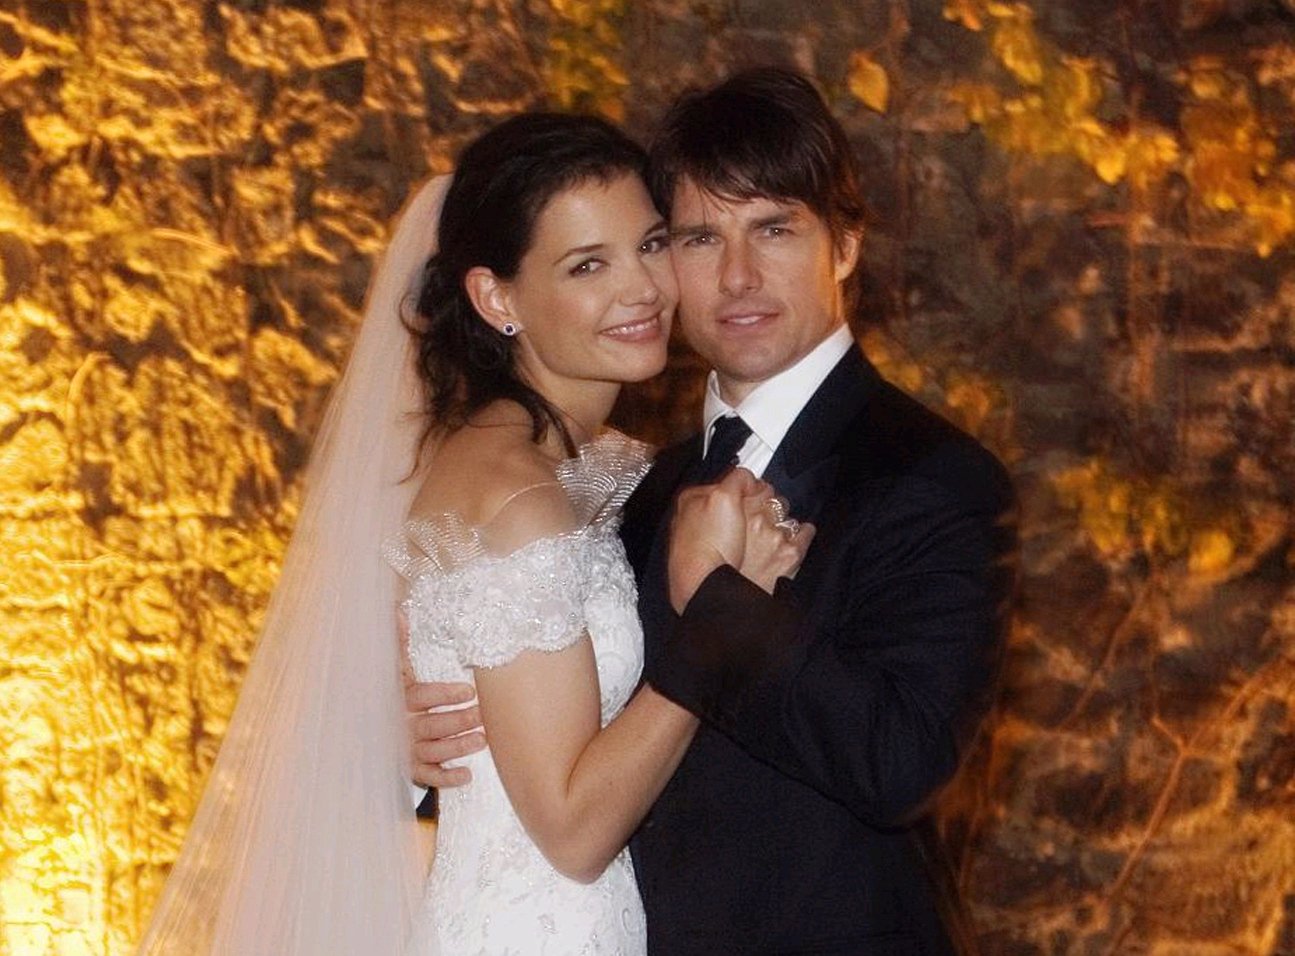 Katie Holmes et Tom Cruise lors de leur mariage au château d'Odescalchi, le 18 novembre 2006, à Rome, en Italie. | Source : Getty Images